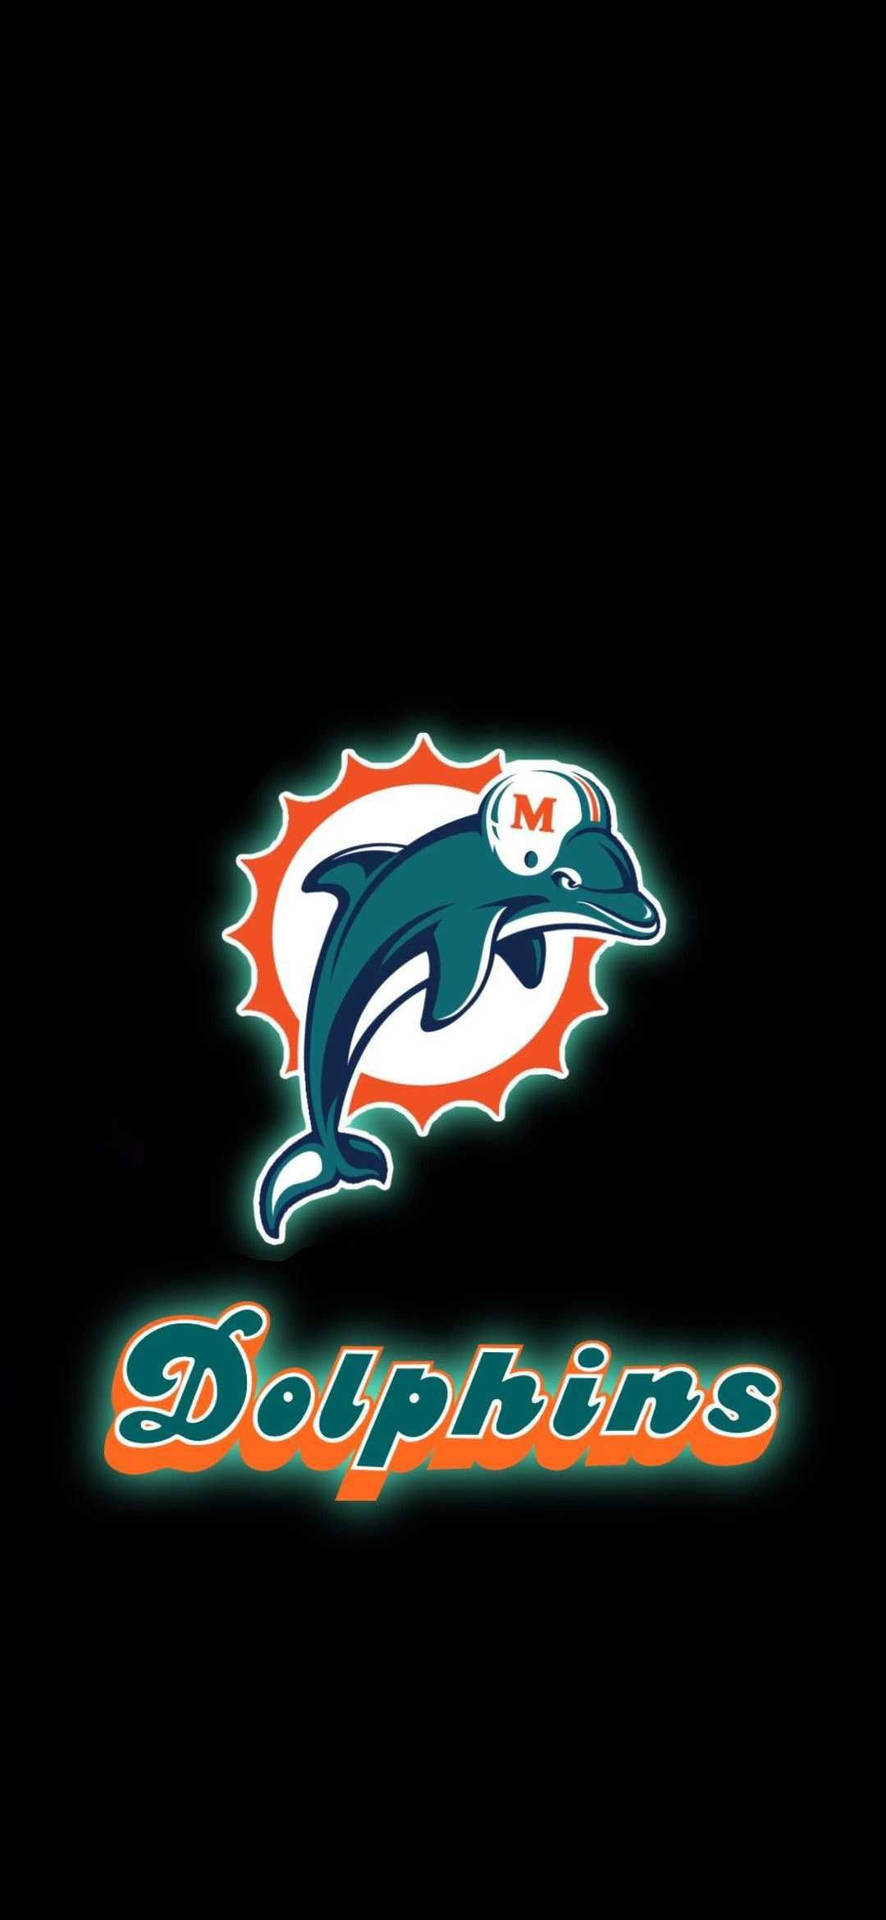 Rock din fandom og vis støtte til Miami Dolphins med denne Miami Dolphins Iphone! Wallpaper